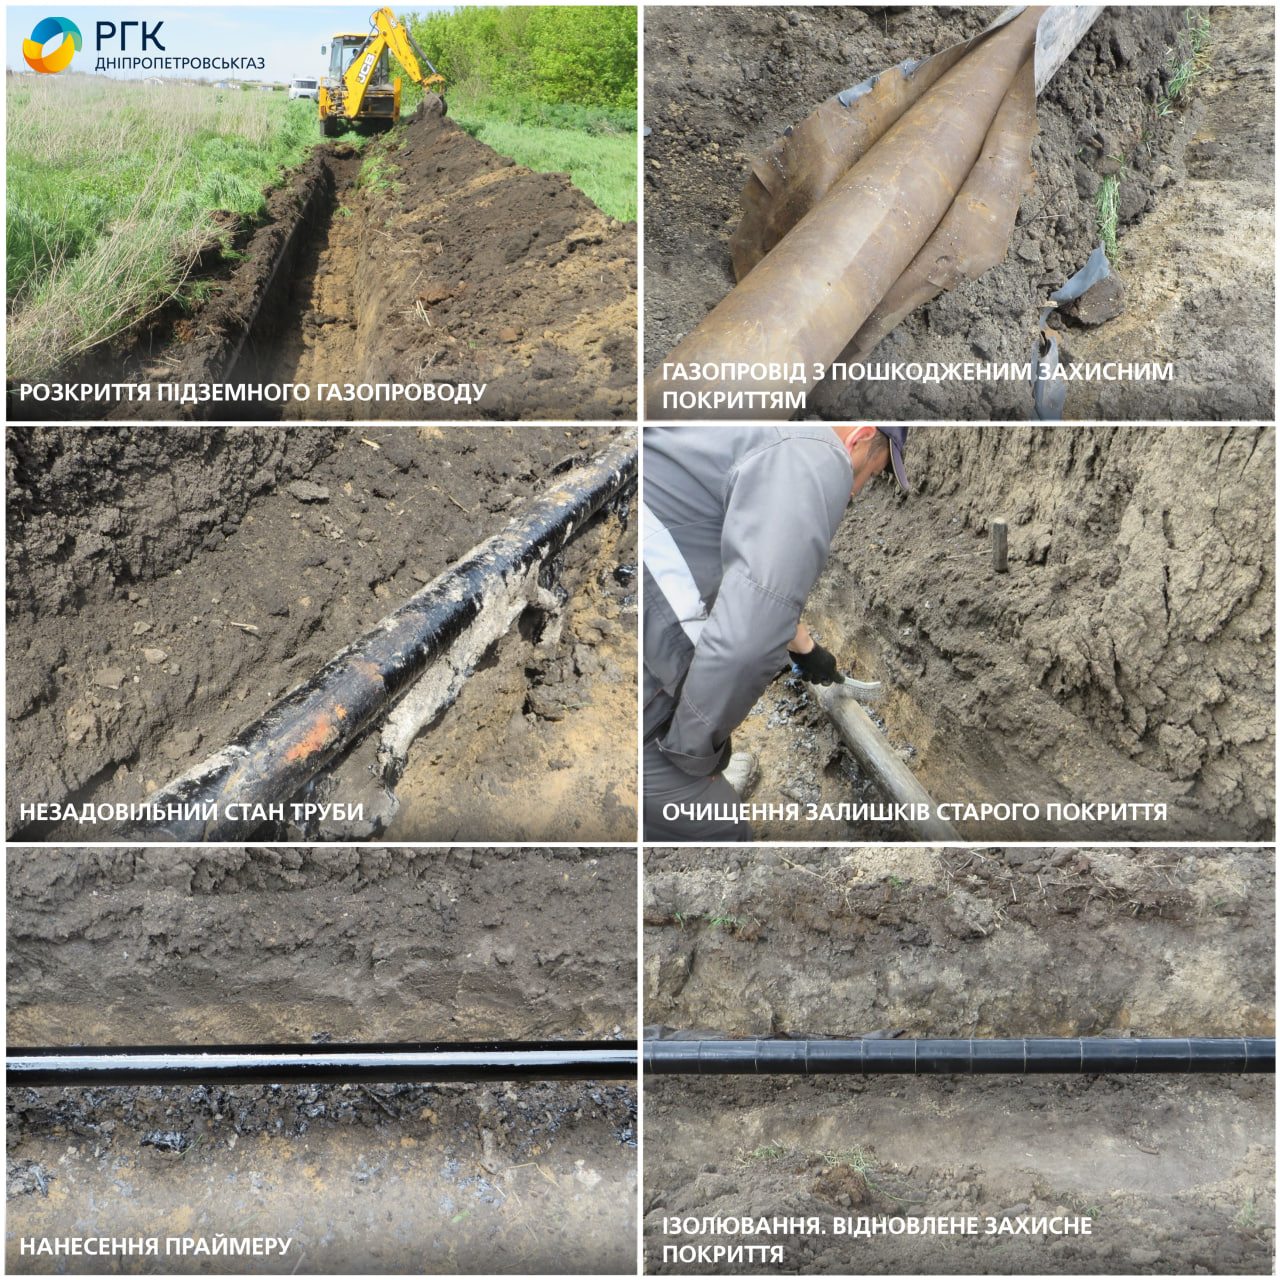 АТ «Дніпропетровськгаз» відновило ізоляційне захисне покриття понад одного кілометра підземних газопроводів